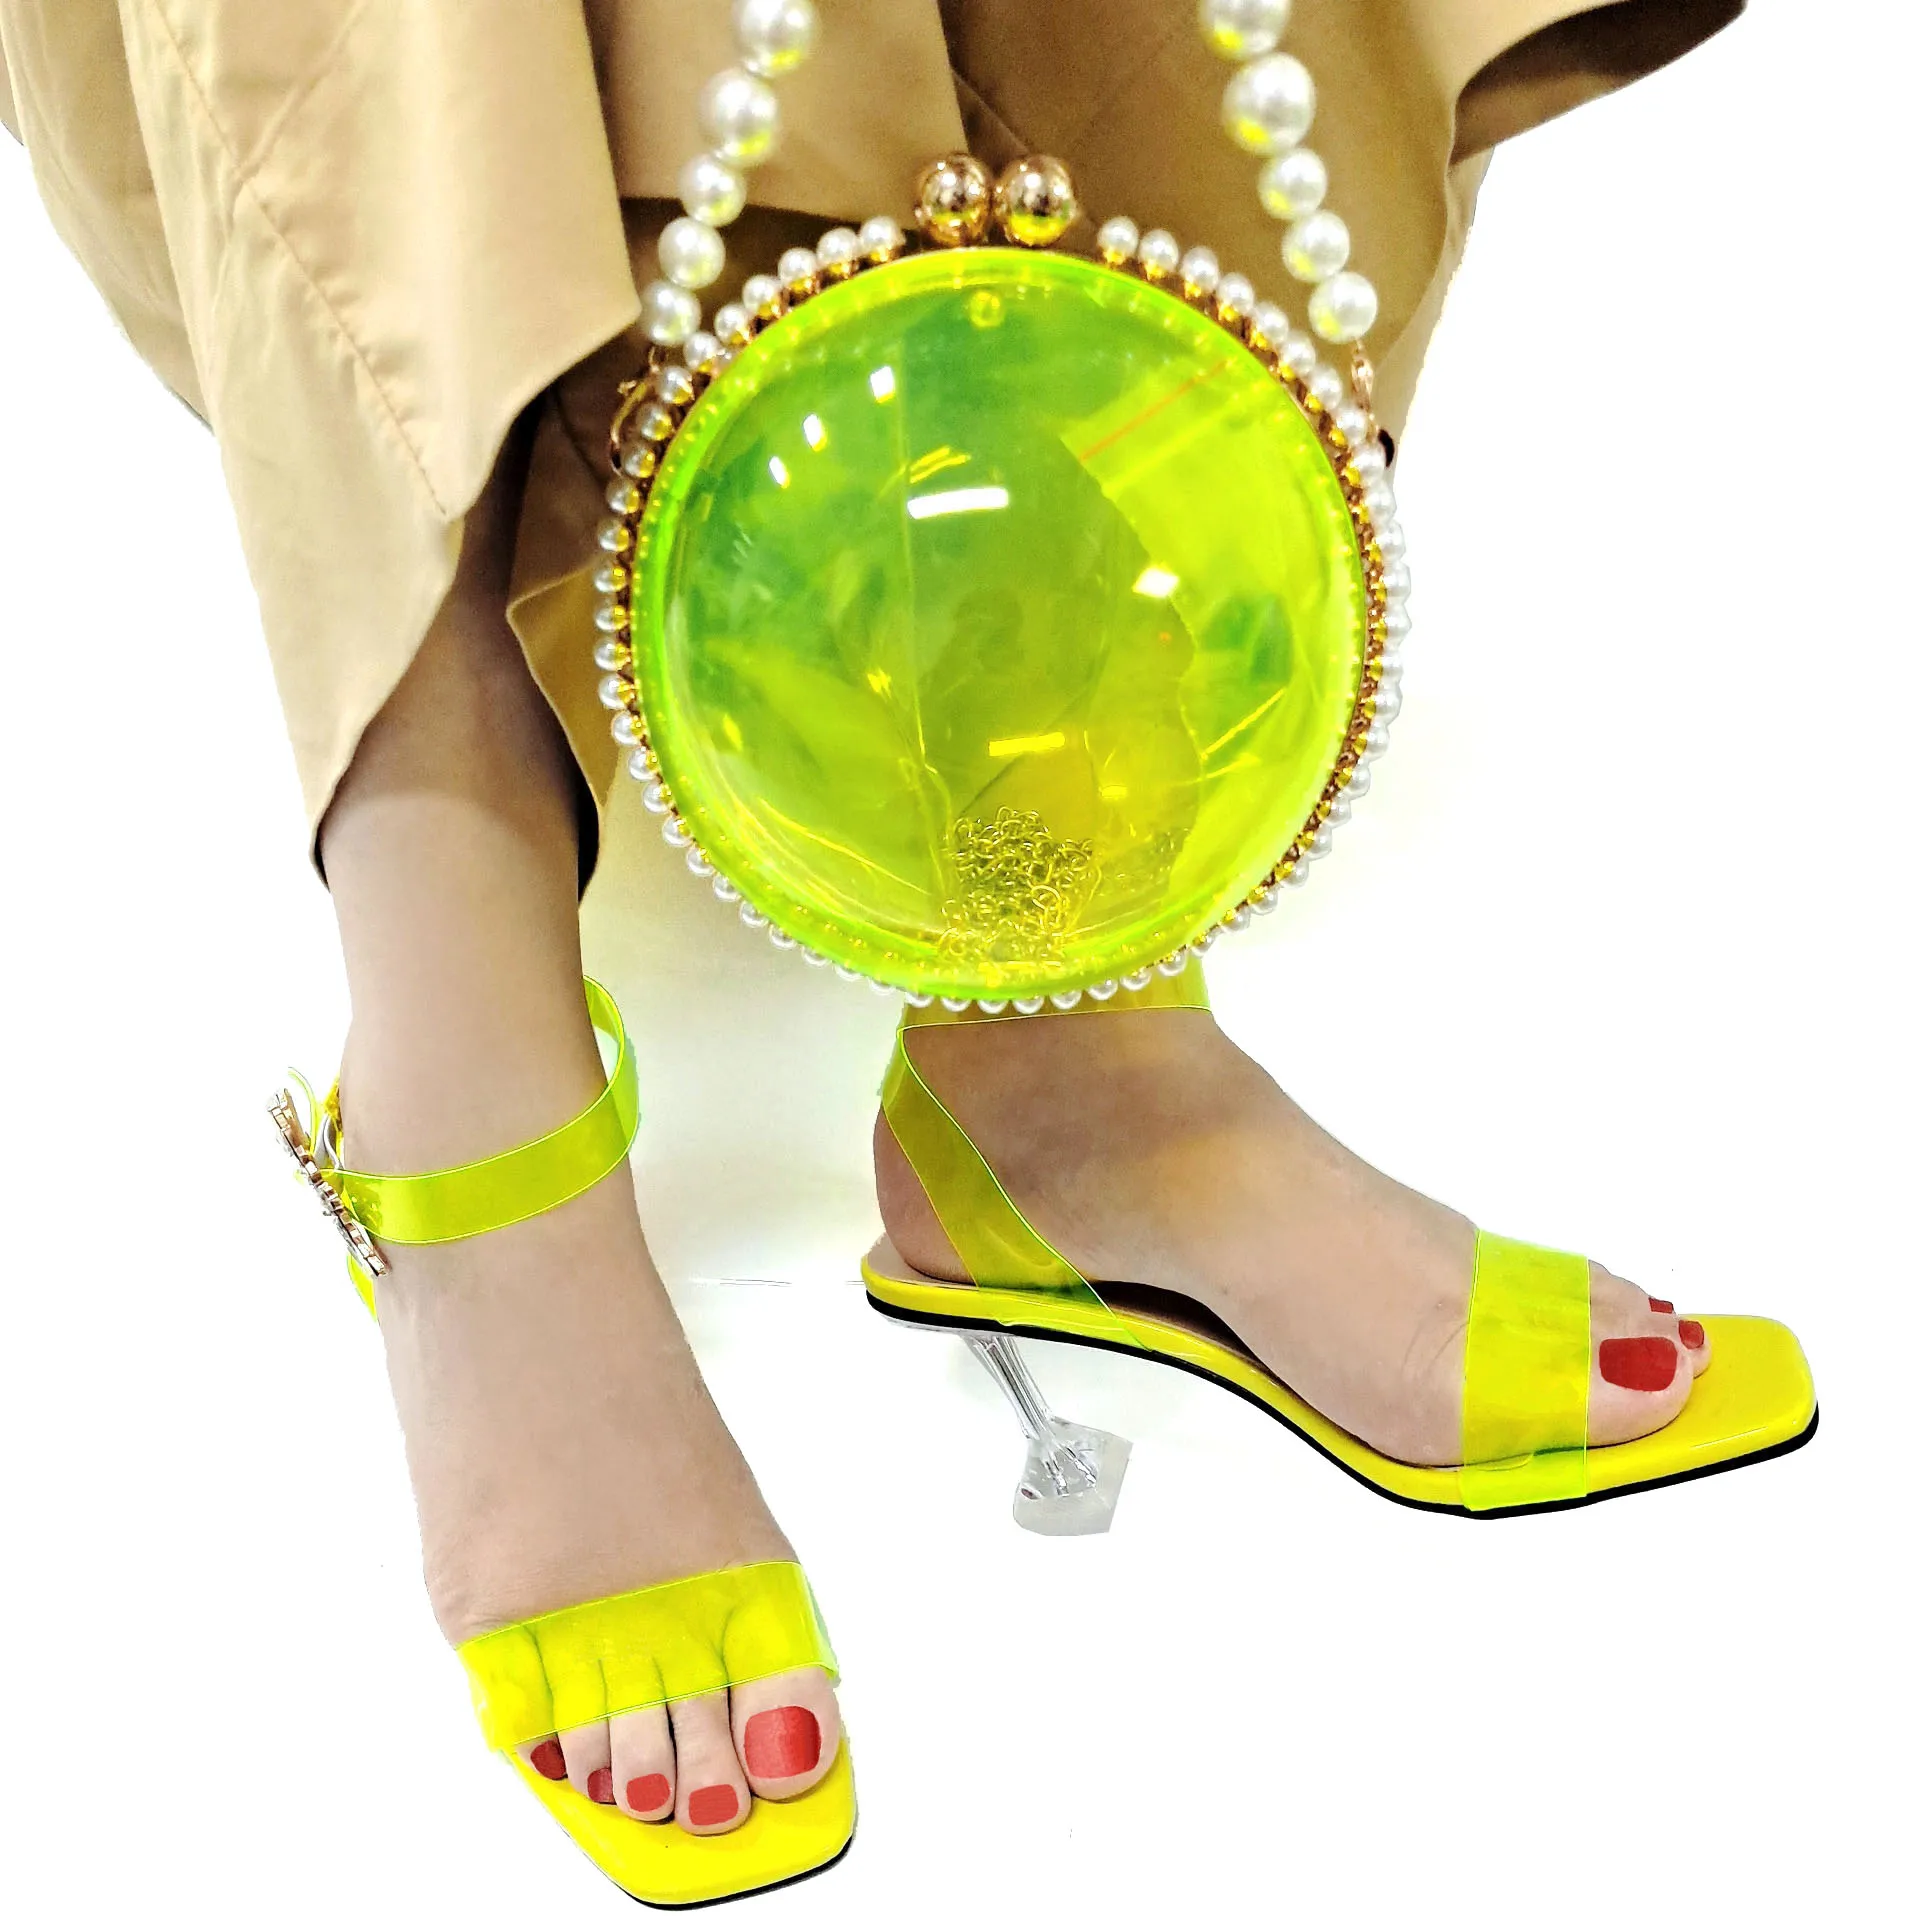 

Новое поступление, благородный итальянский дизайн, элегантная стильная женская обувь и сумка желтого цвета с кристаллами, украшенная фотоэлементами